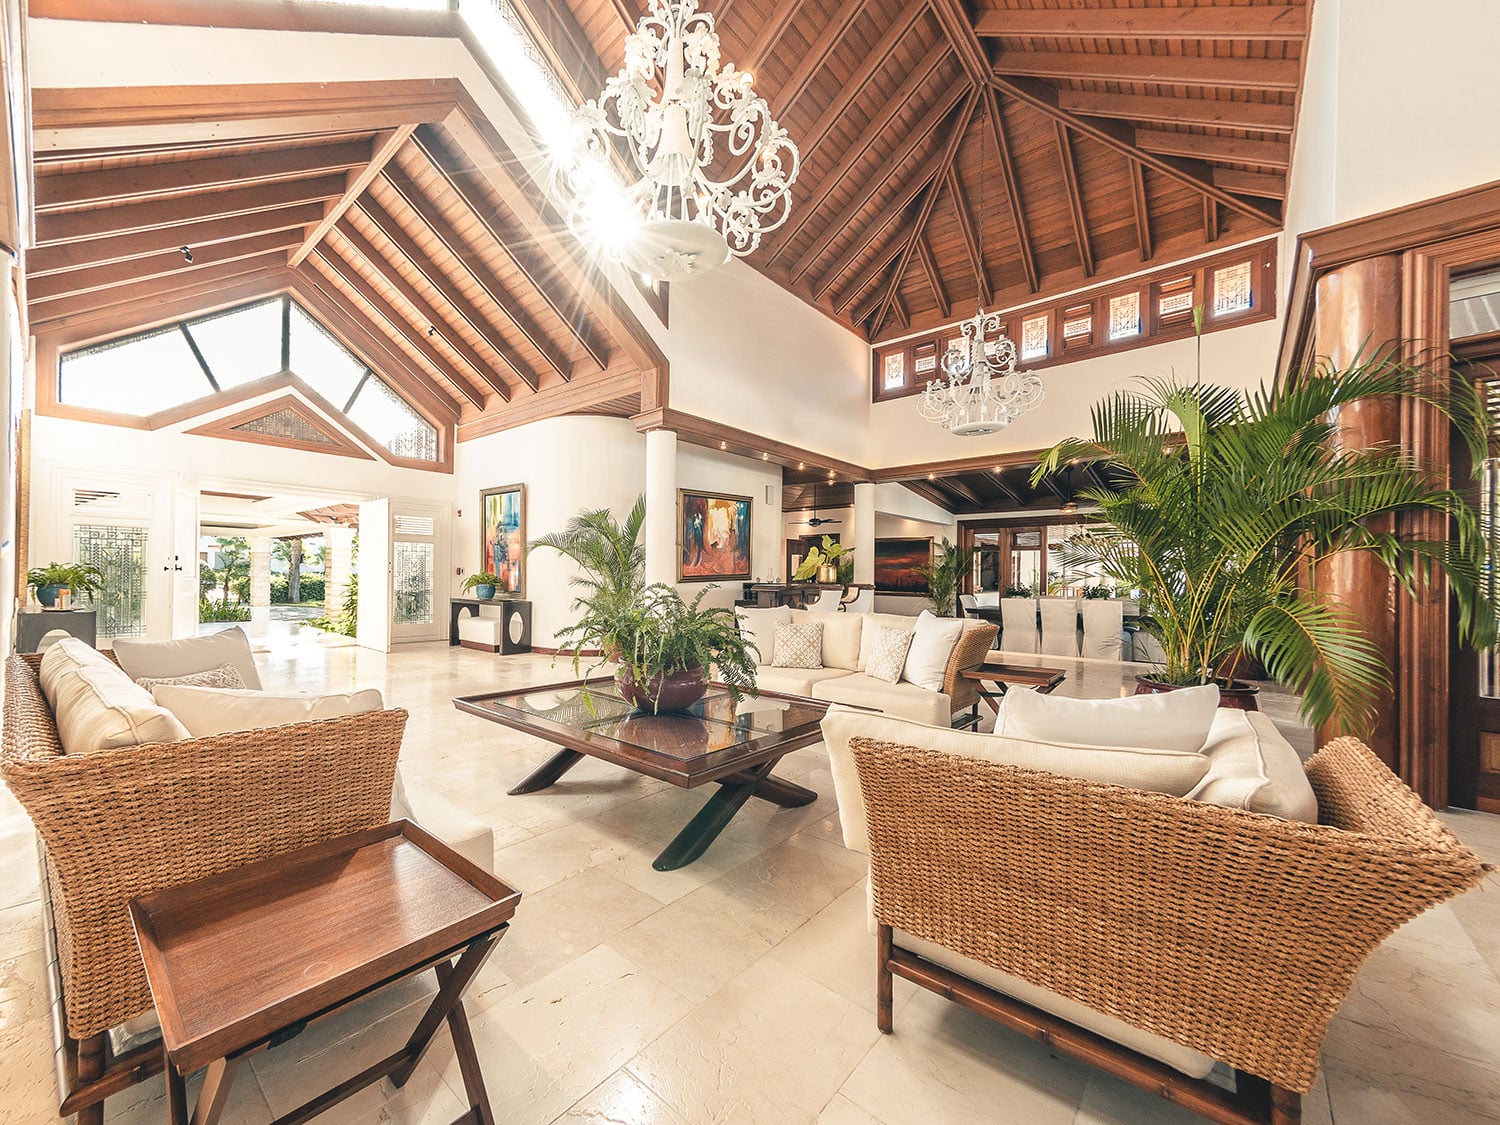 The interior view of the living space in the Maison Larimar villa at Casa de Campo in the Dominican Republic.